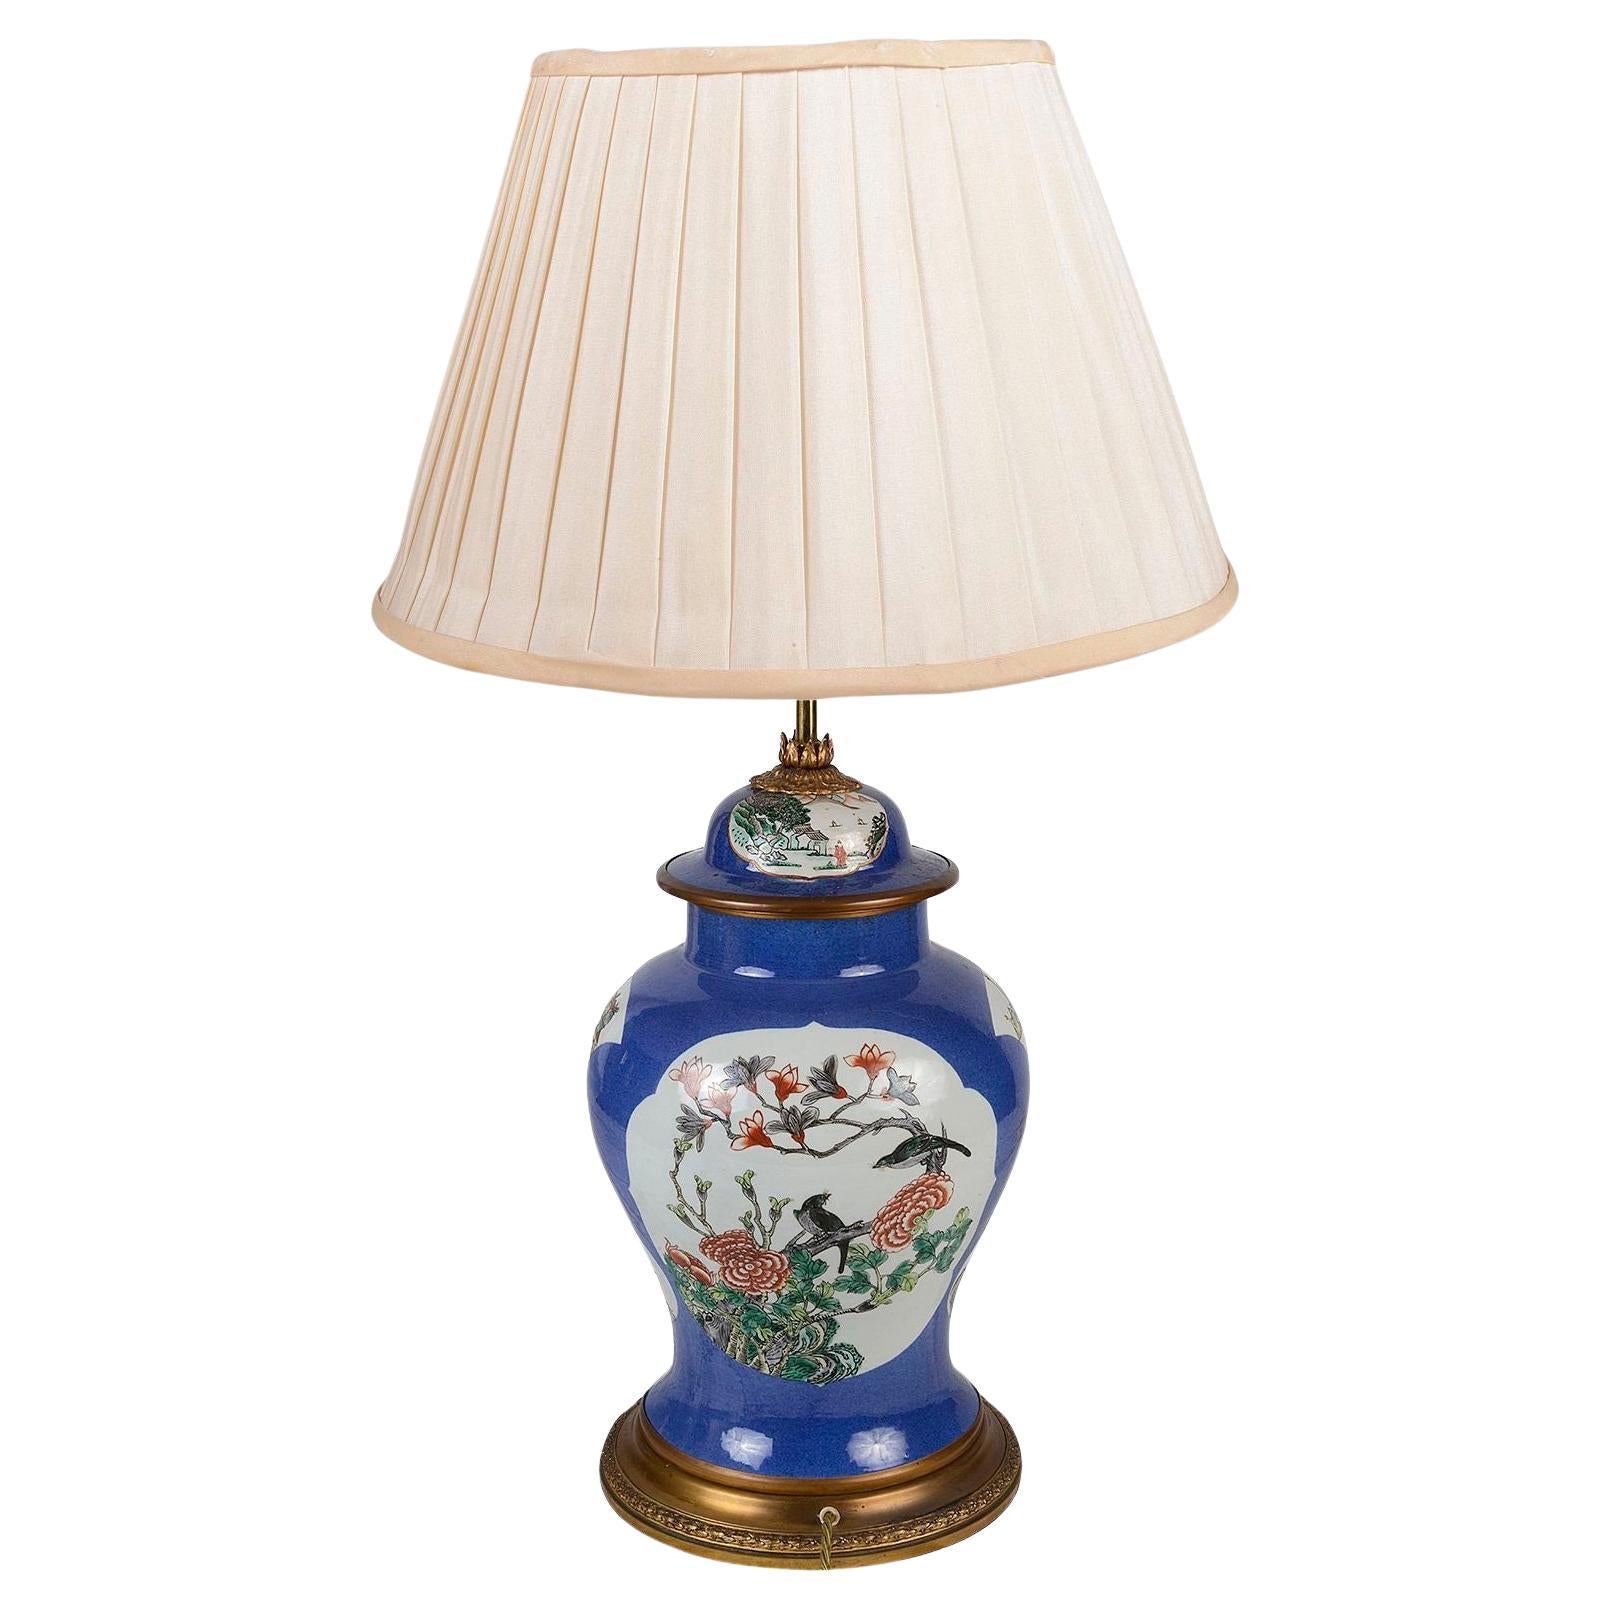 Chinesische Famille Verte-Porzellanvase / Lampe aus dem 19. Jahrhundert